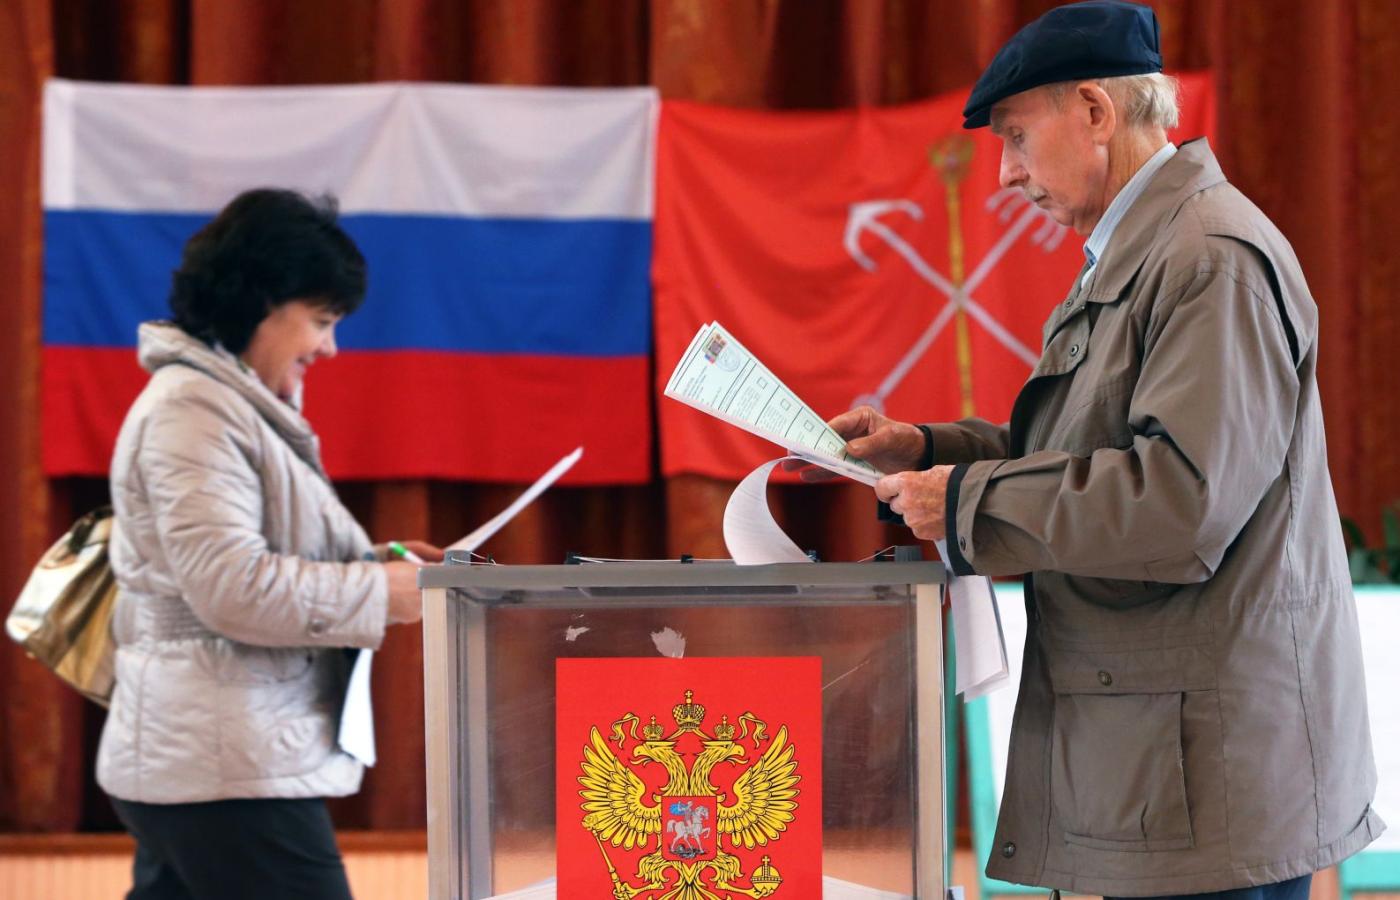 W kontekście wyzwań stojących przed systemem władzy w Rosji obecne wybory parlamentarne są istotne, ale nie decydujące.